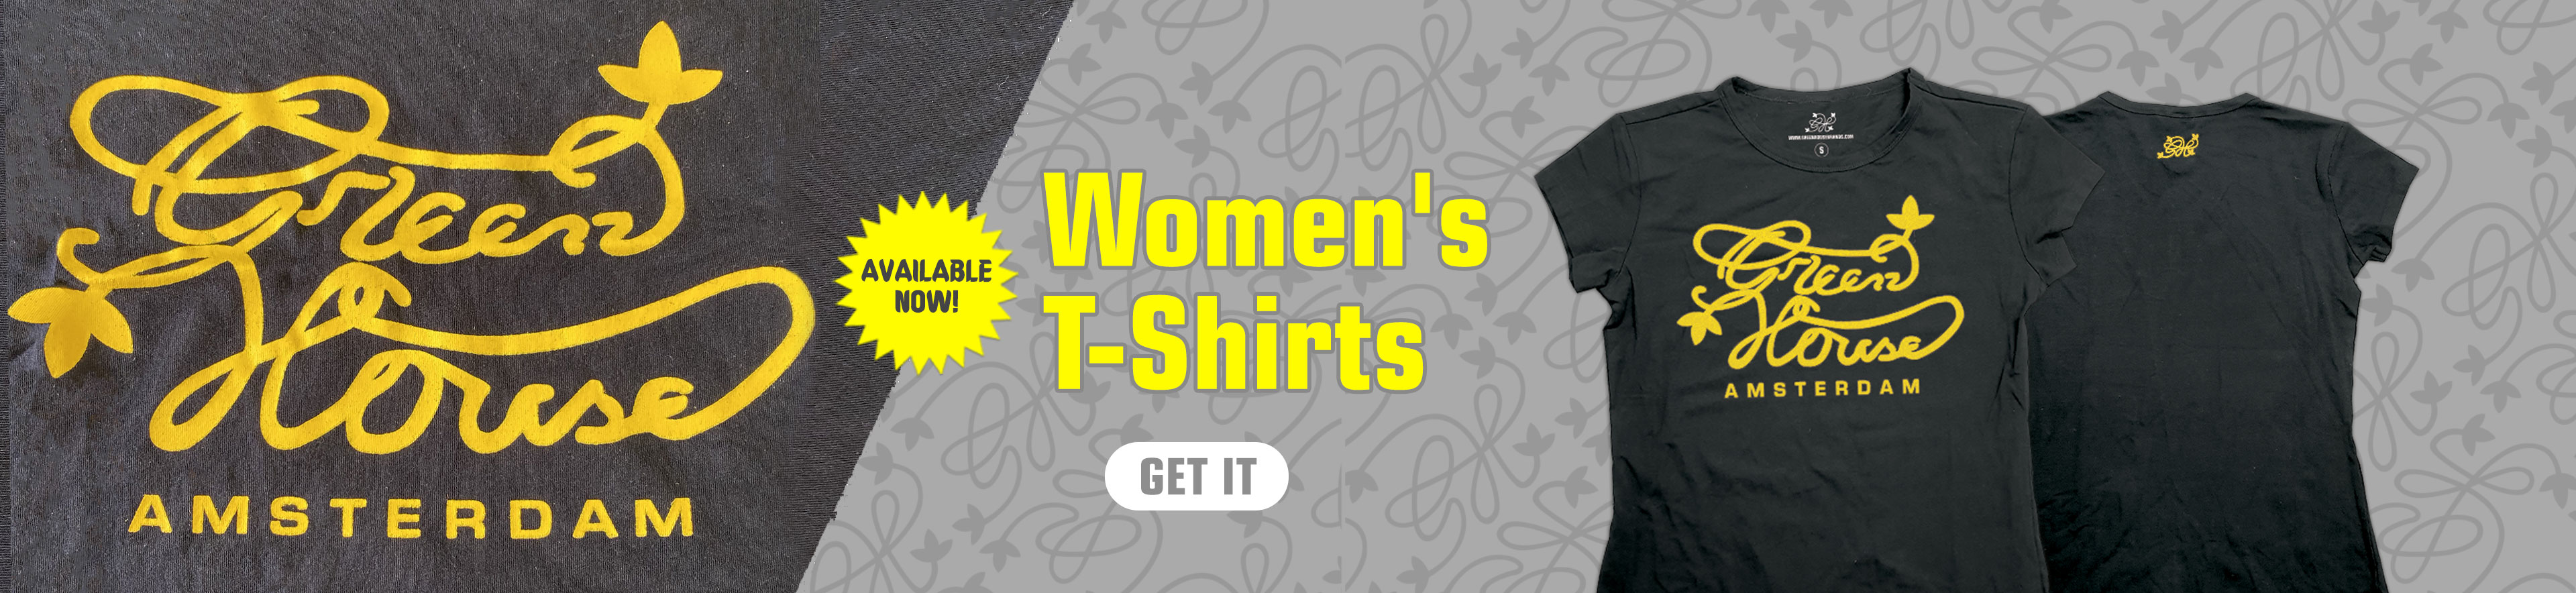 GH women's t-shirt